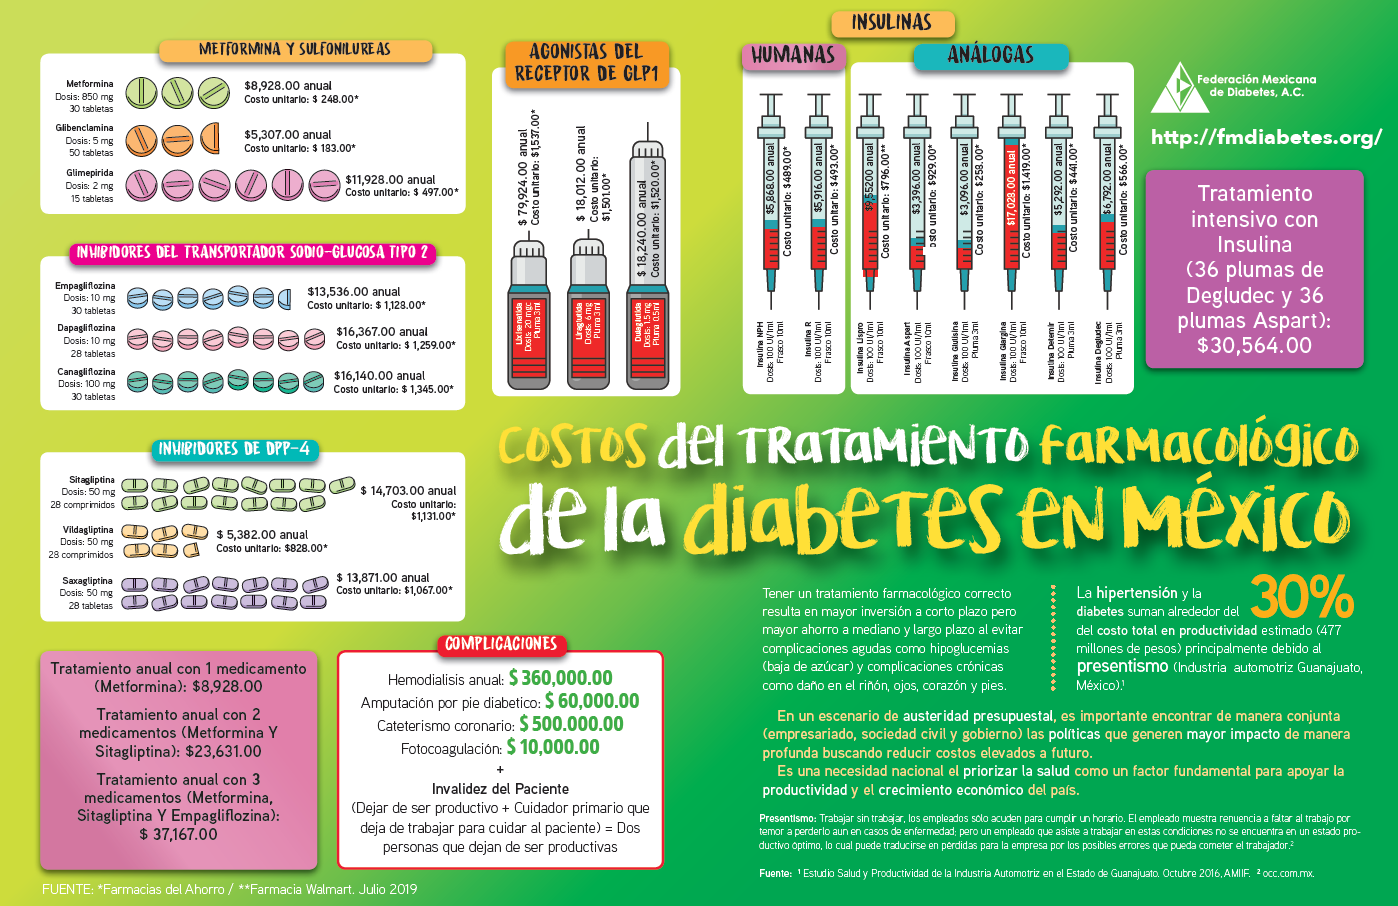 Costo tratamiento farmacológico para la diabetes en México - Mexicana de A.C.